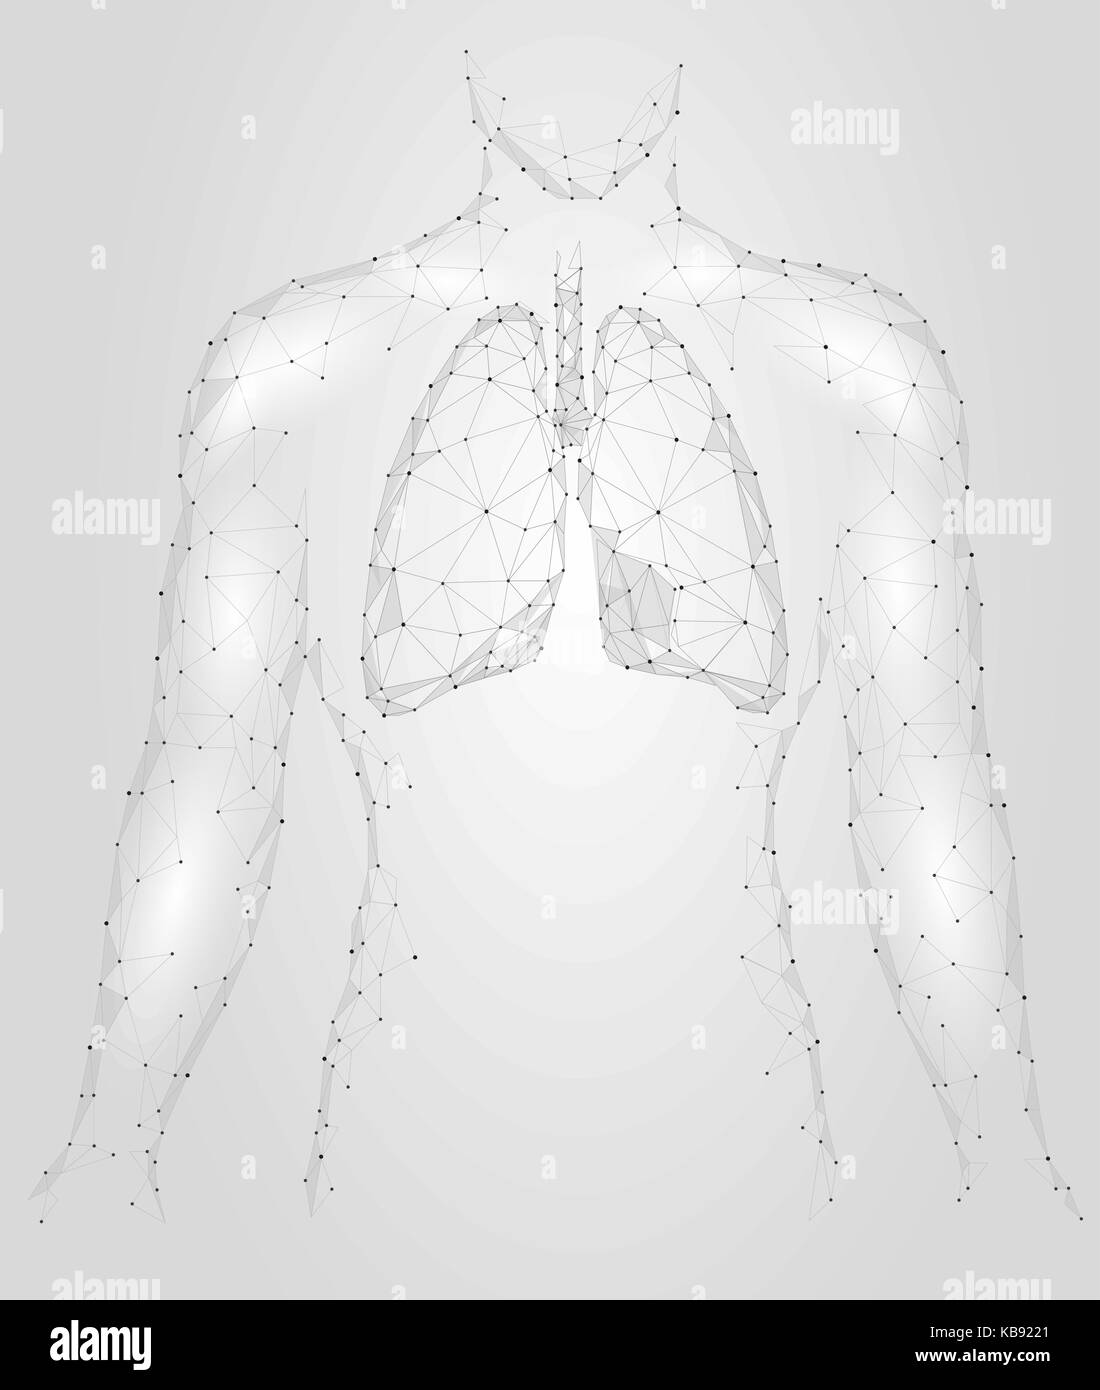 Menschliche Lungen pulmonale Infektion internen Organ. Atemwege im Körper Silhouette. Low Poly 3d angeschlossen Dots Dreieck polygonalen Design. Grau Weiß Farbe Hintergrund Vector Illustration Stock Vektor